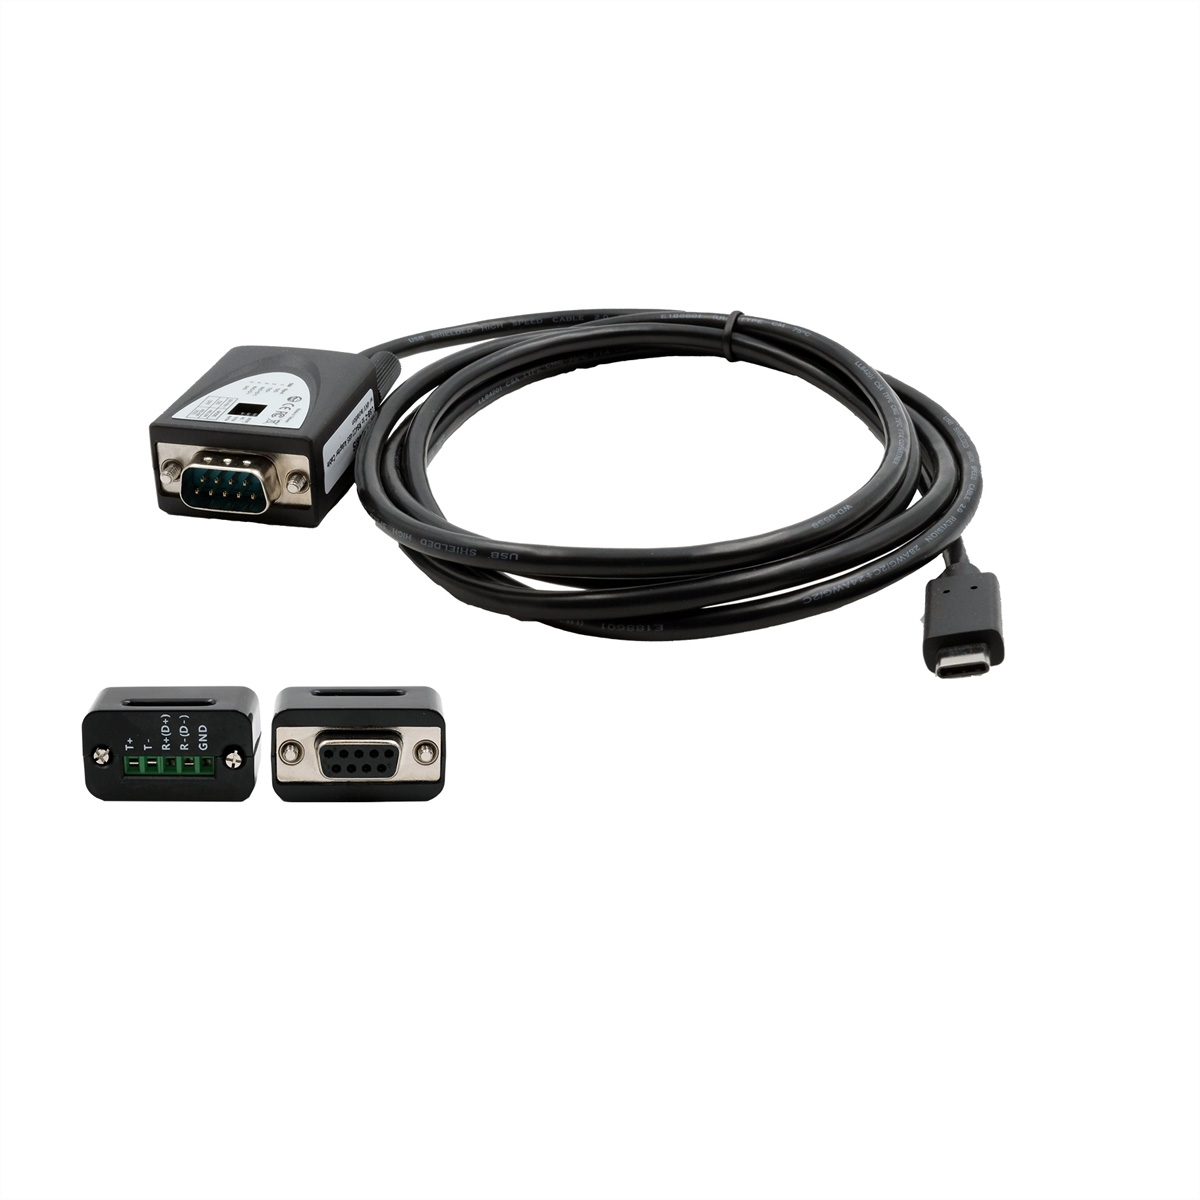 EXSYS EX-2346 USB 2.0 zu 1S Serielle Schnittstelle RS-422/485 Port Konverter, Kabel, FTDI, schwarz, 1,8 m